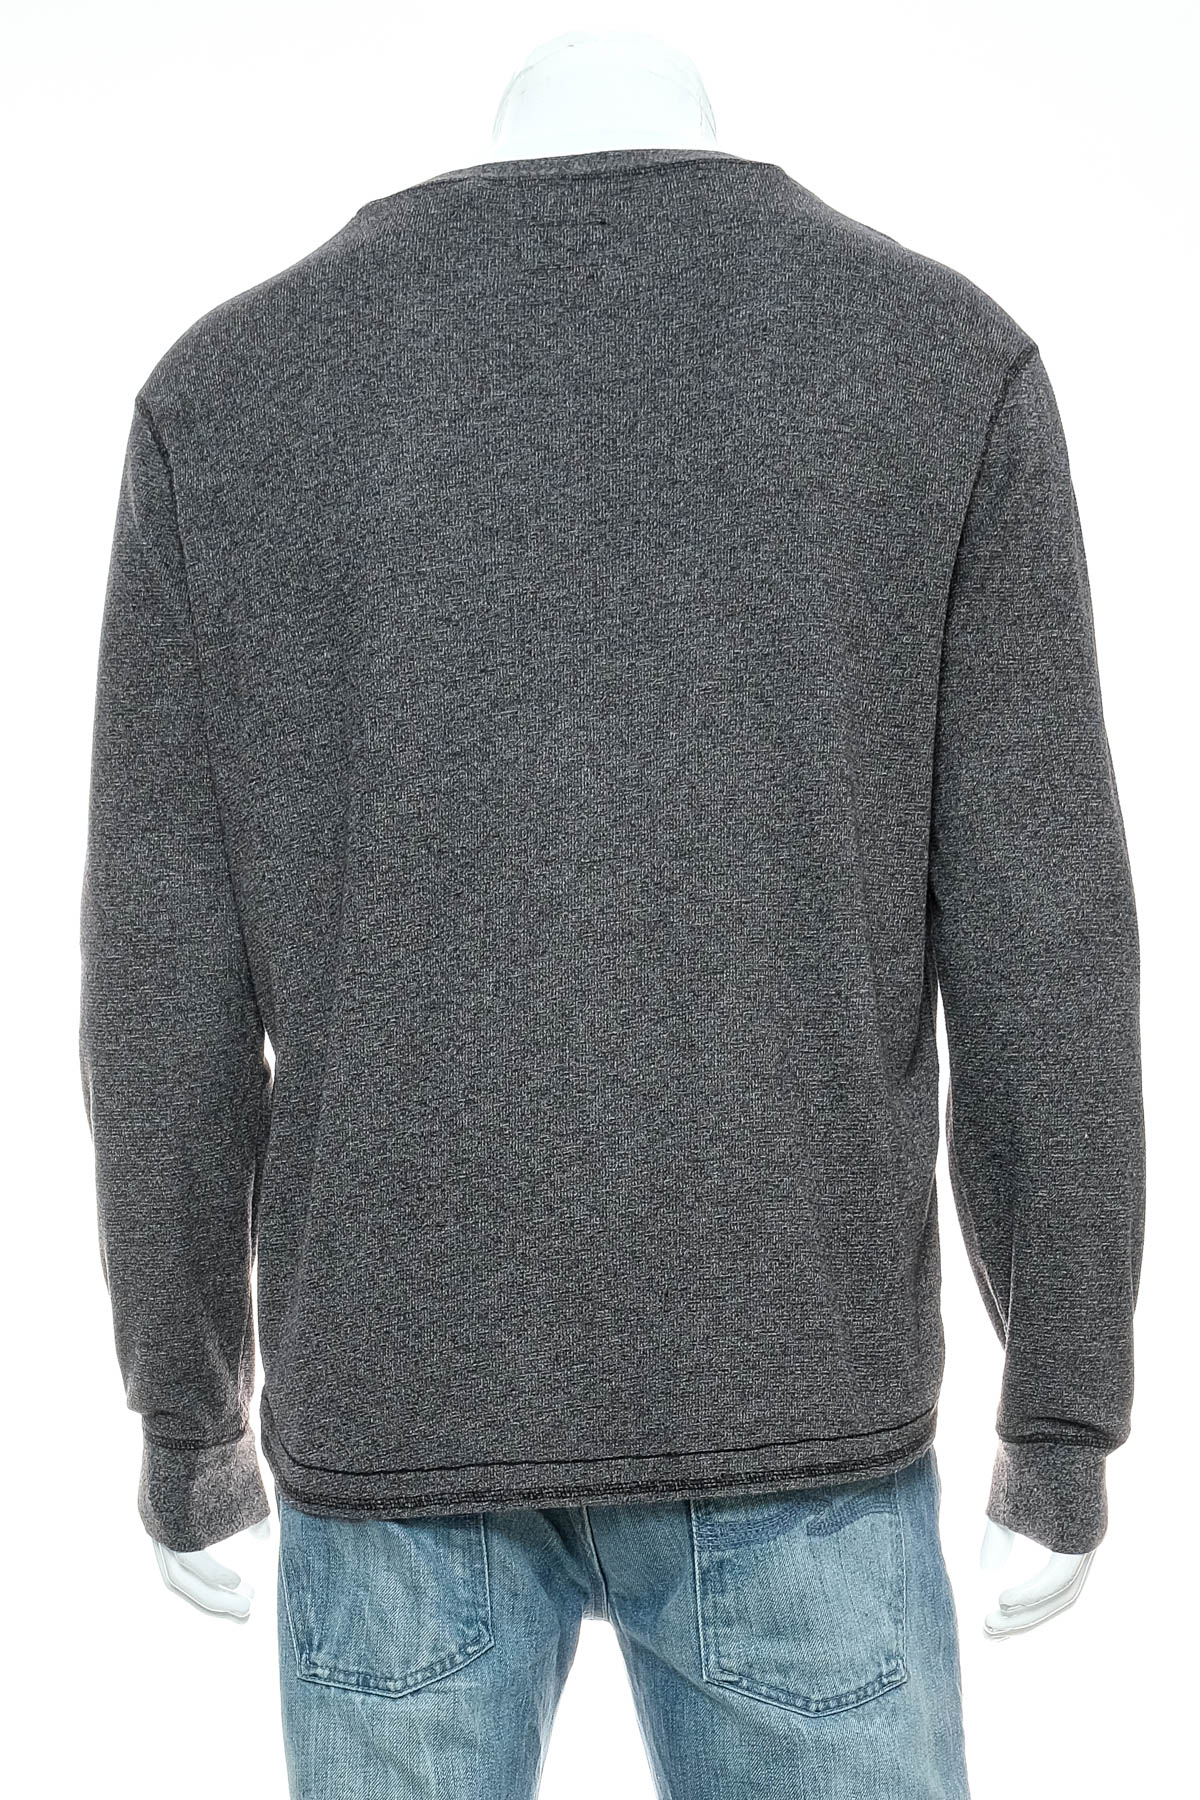 Men's sweater - KOLBY - 1